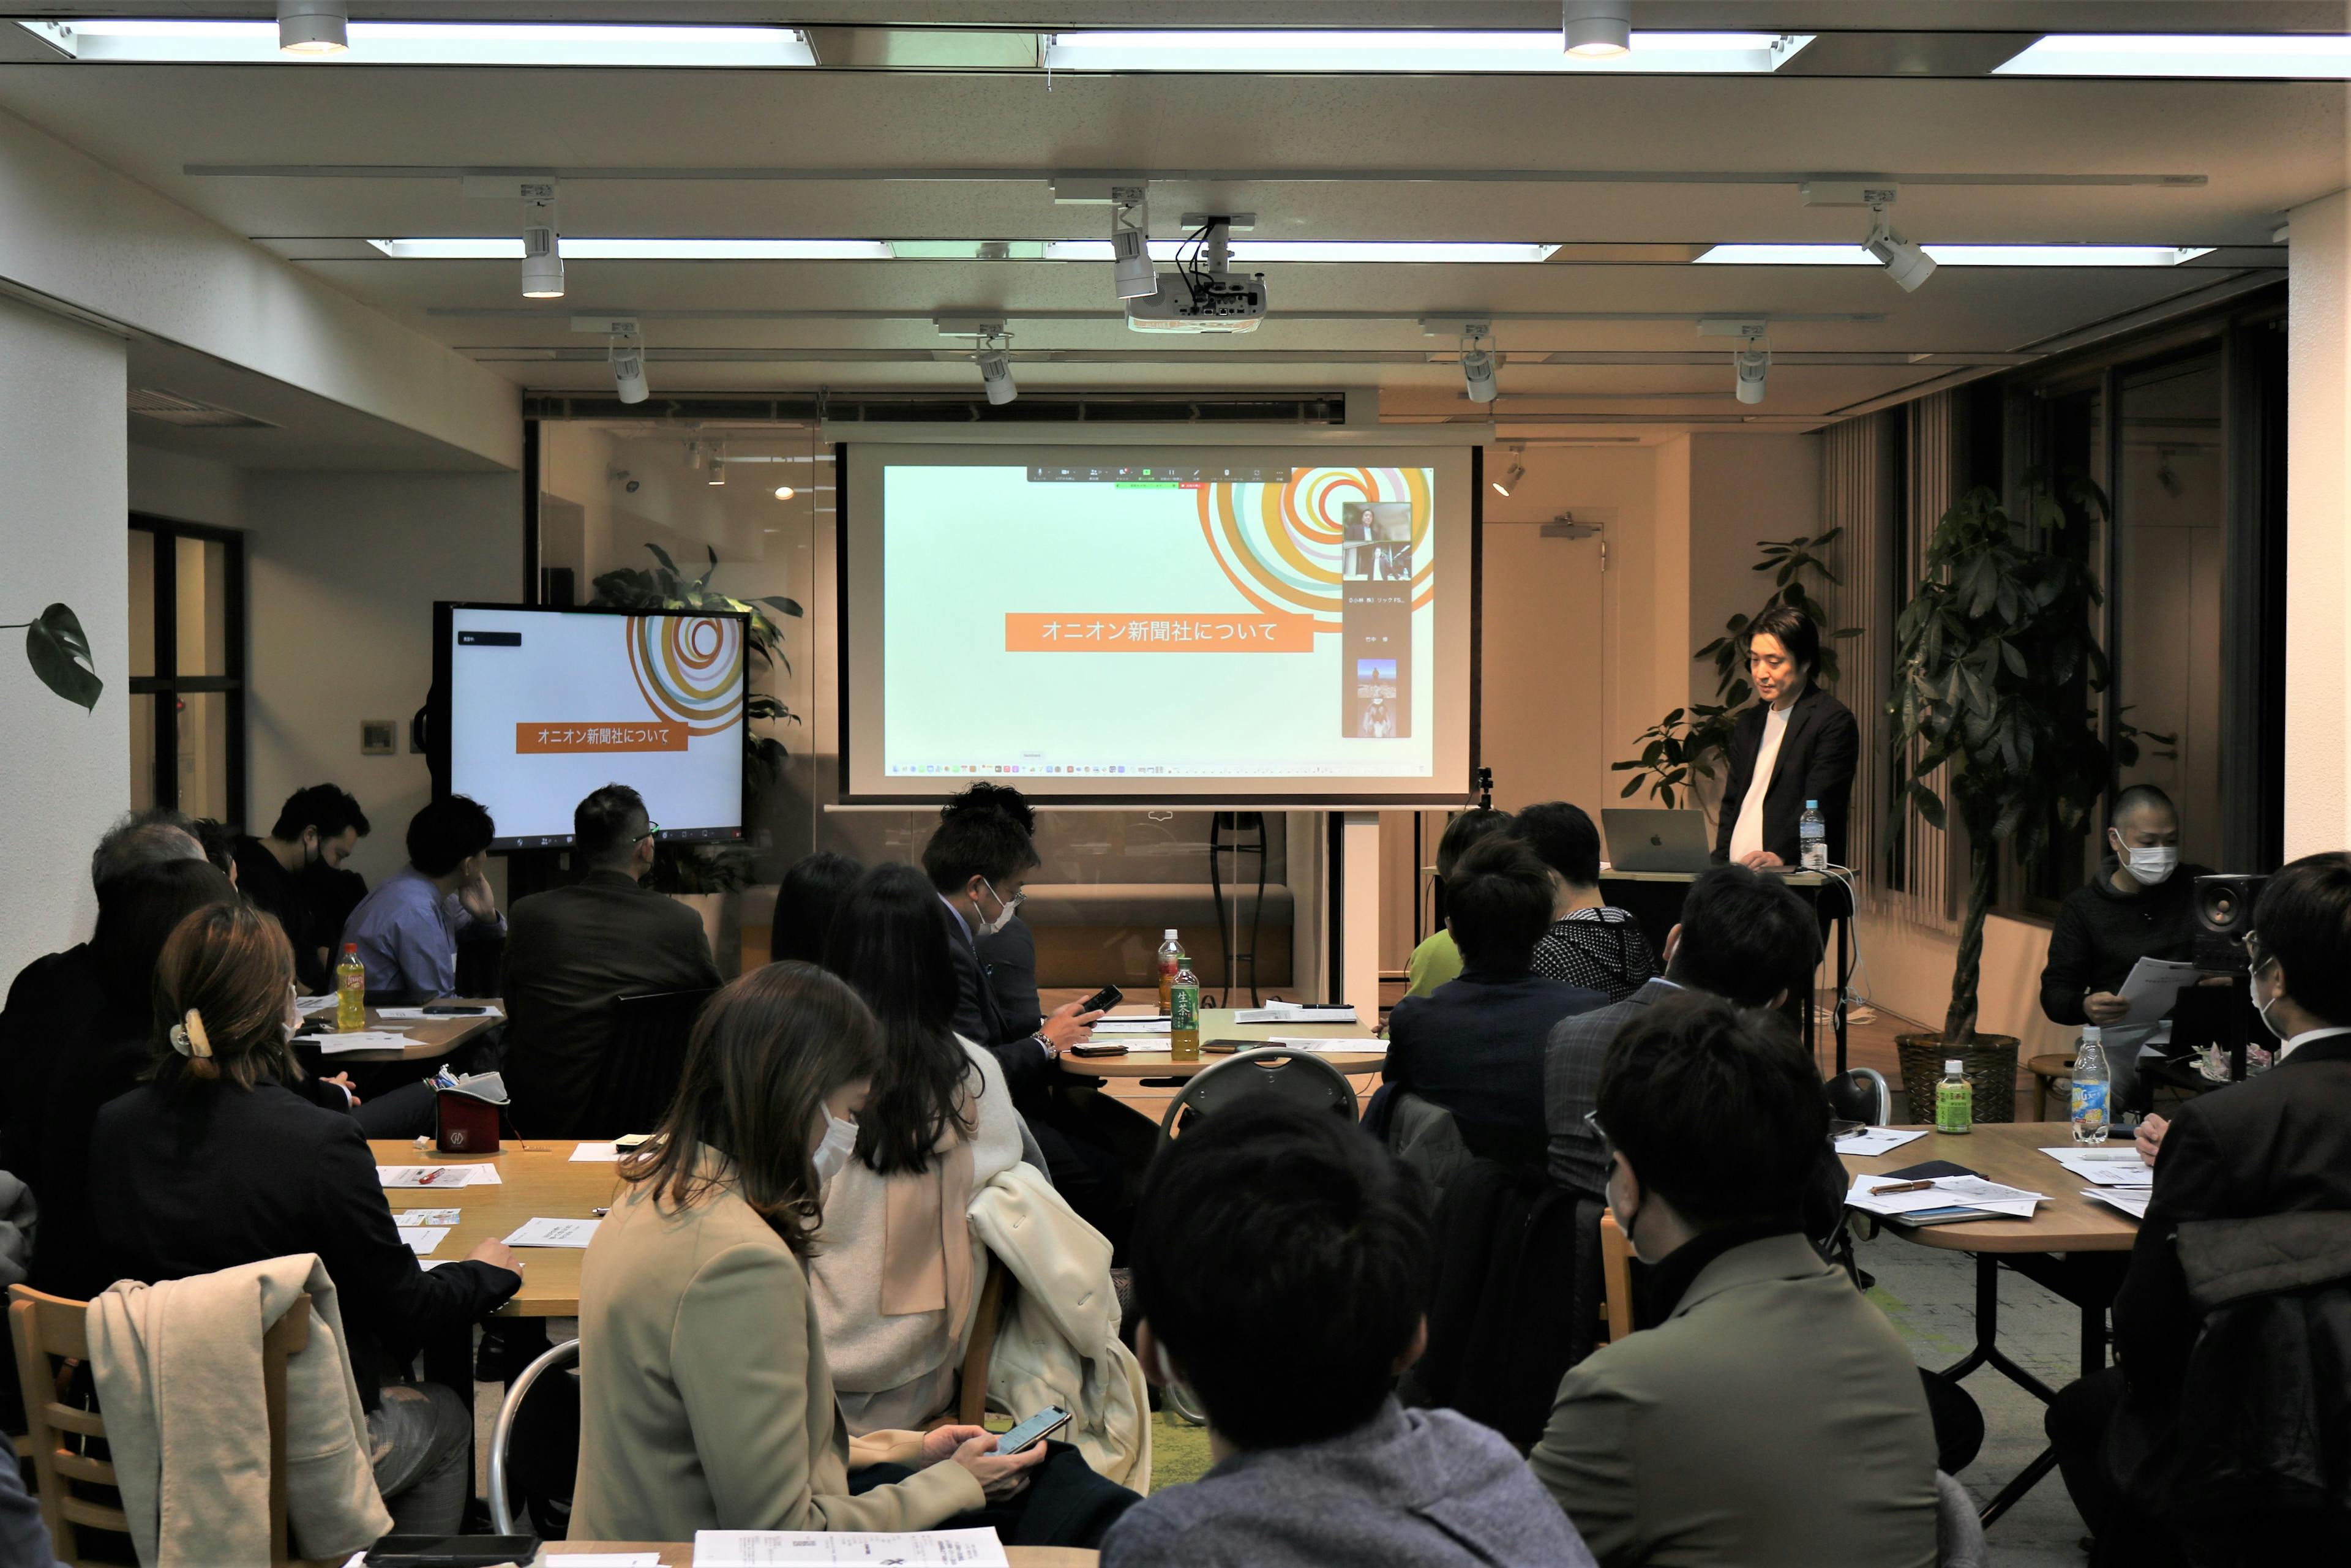 オニオン新聞社代表の山本 寛が事業ピポットをテーマに「千葉県中小企業家同友会 船橋支部」例会にて講師として登壇いたしました。